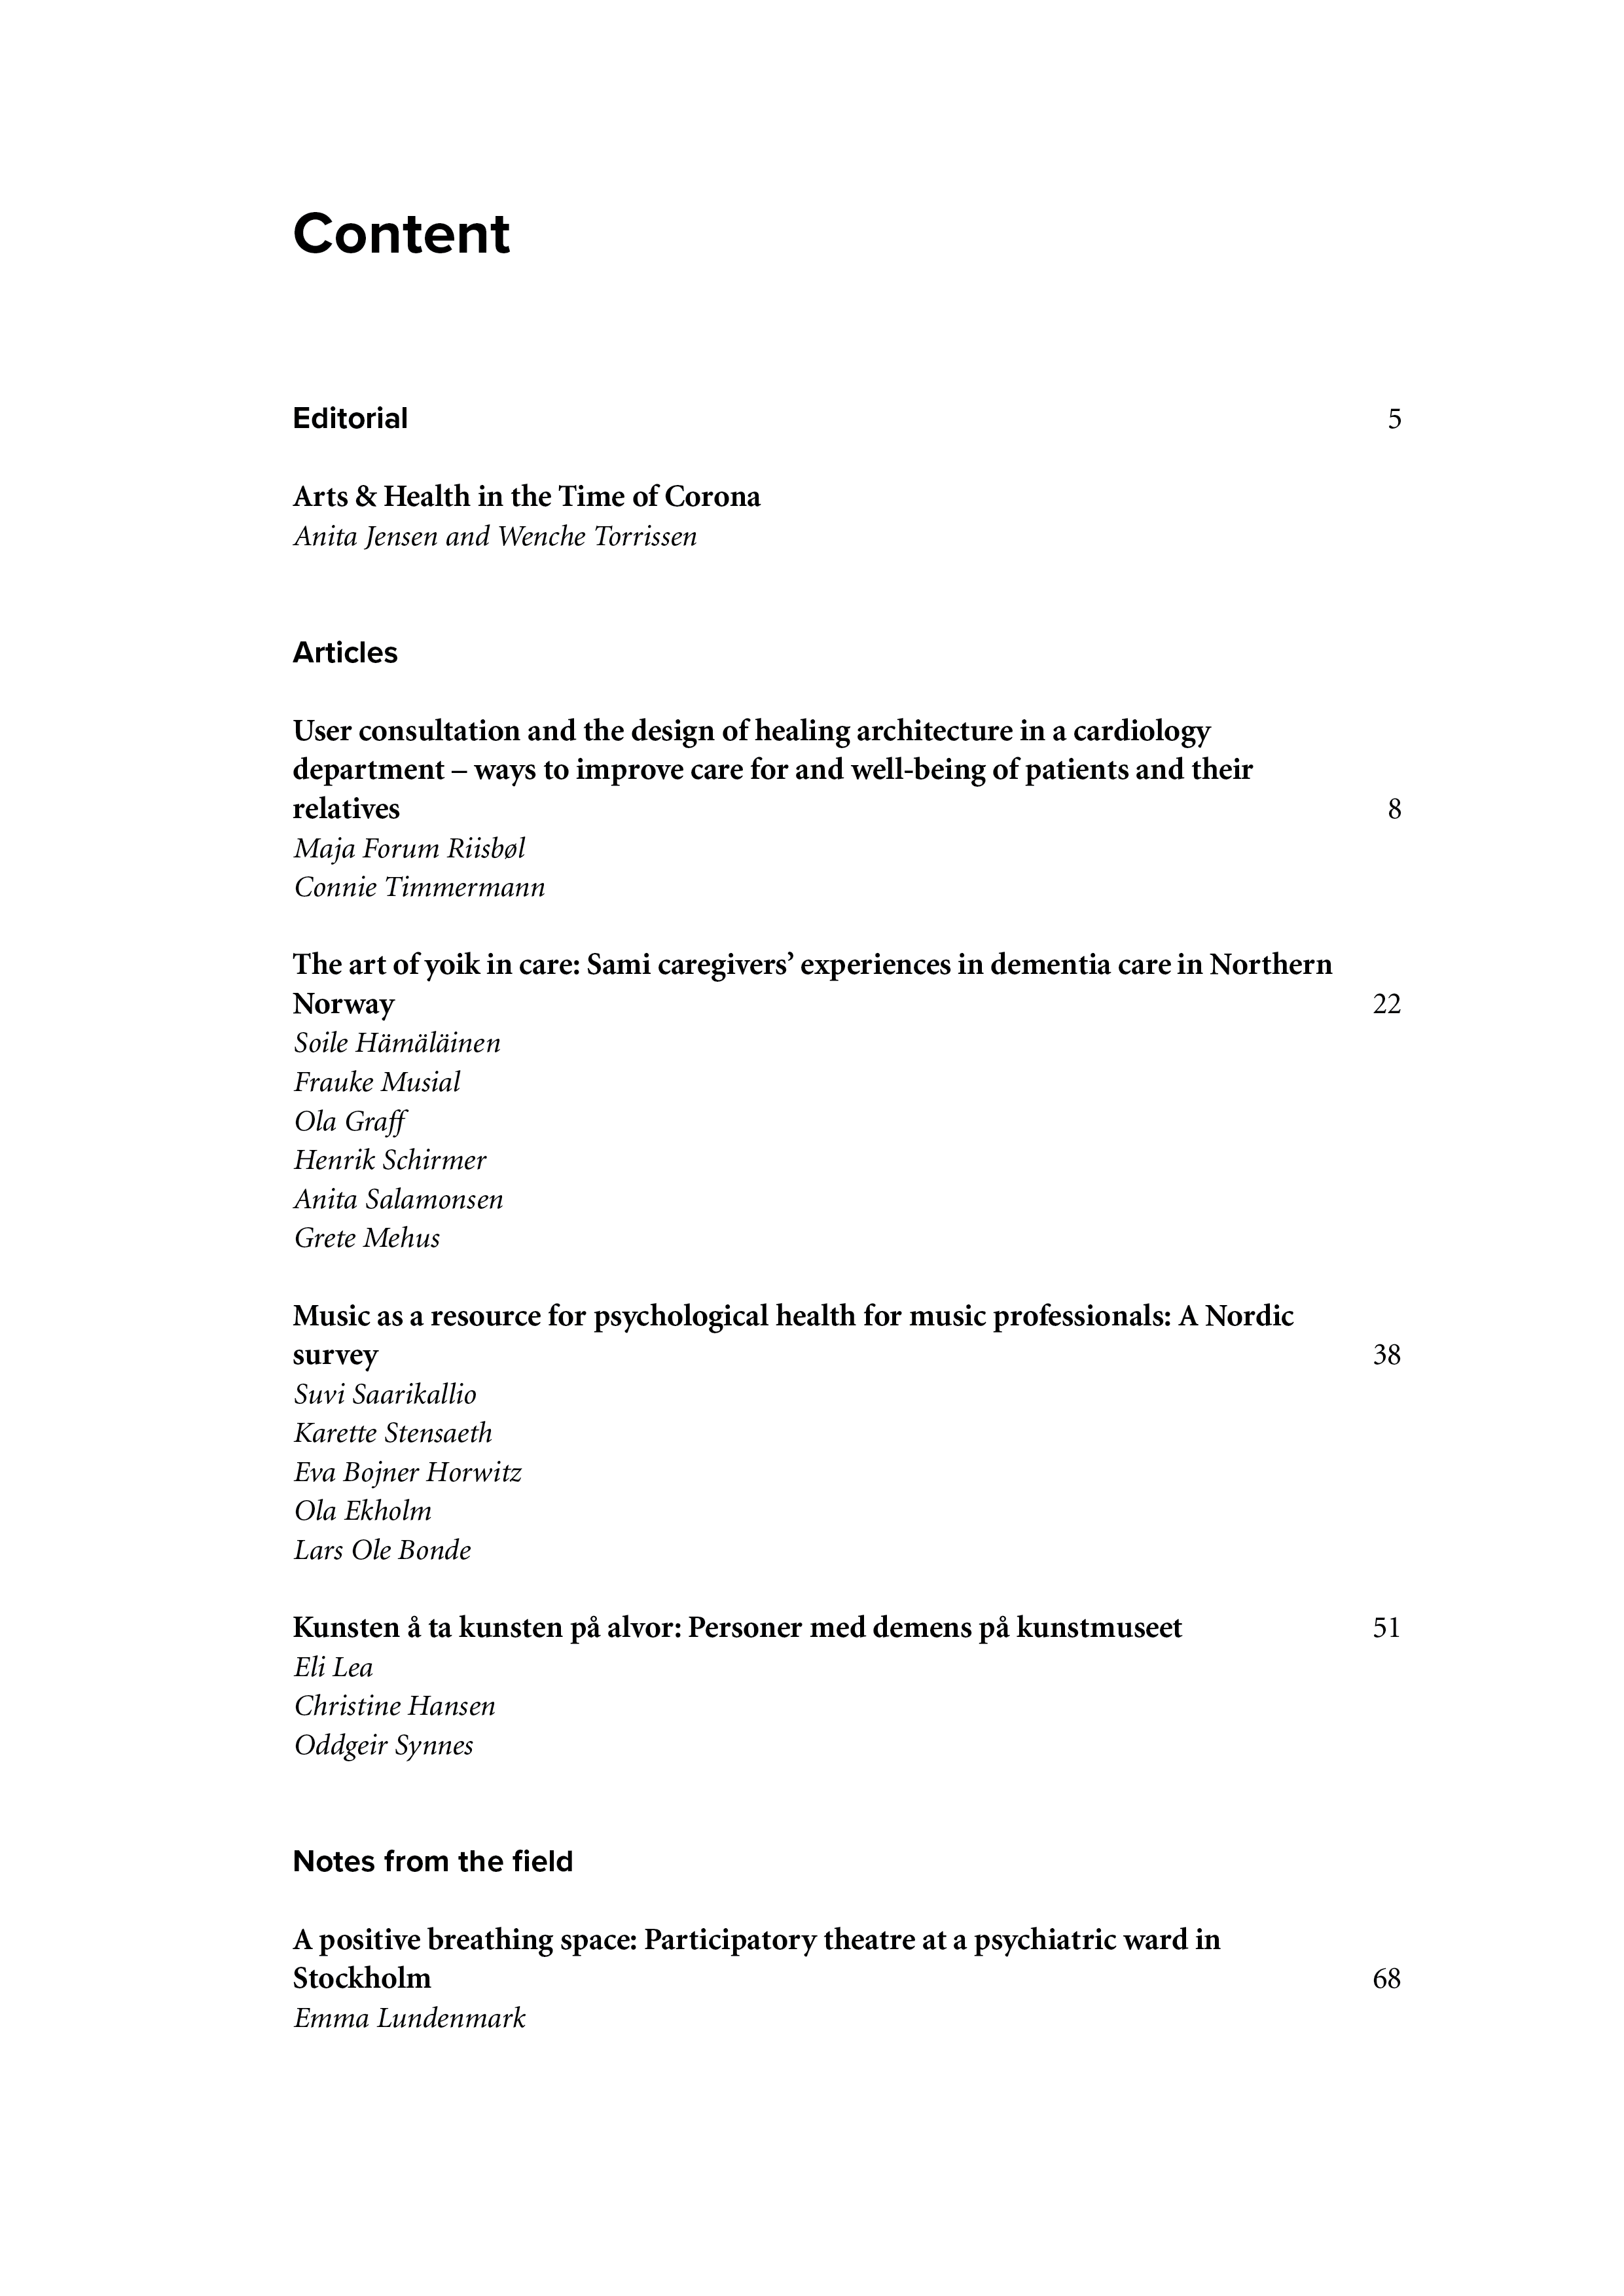 Indholdsfortegnelsen til 'Nordic journal of arts, culture and health vol 2'